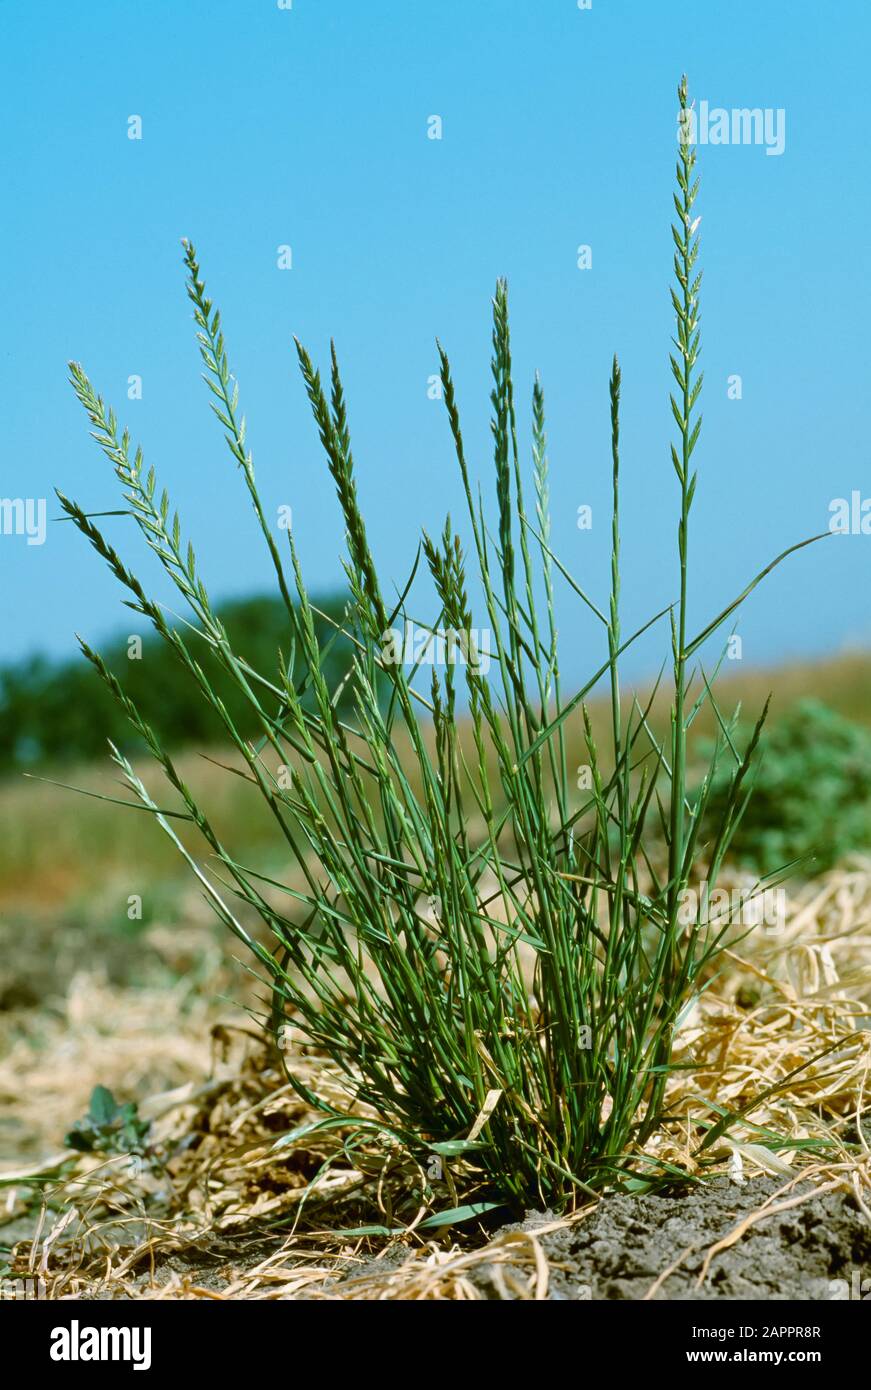 Landwirtschaft - Unkraut, italienischer Ryegrass (Lolium multiflorum) aka. Jährlicher Ryegrass, australischer Ryegrass; Pflanze im Blütenstand / Kalifornien, USA. Stockfoto